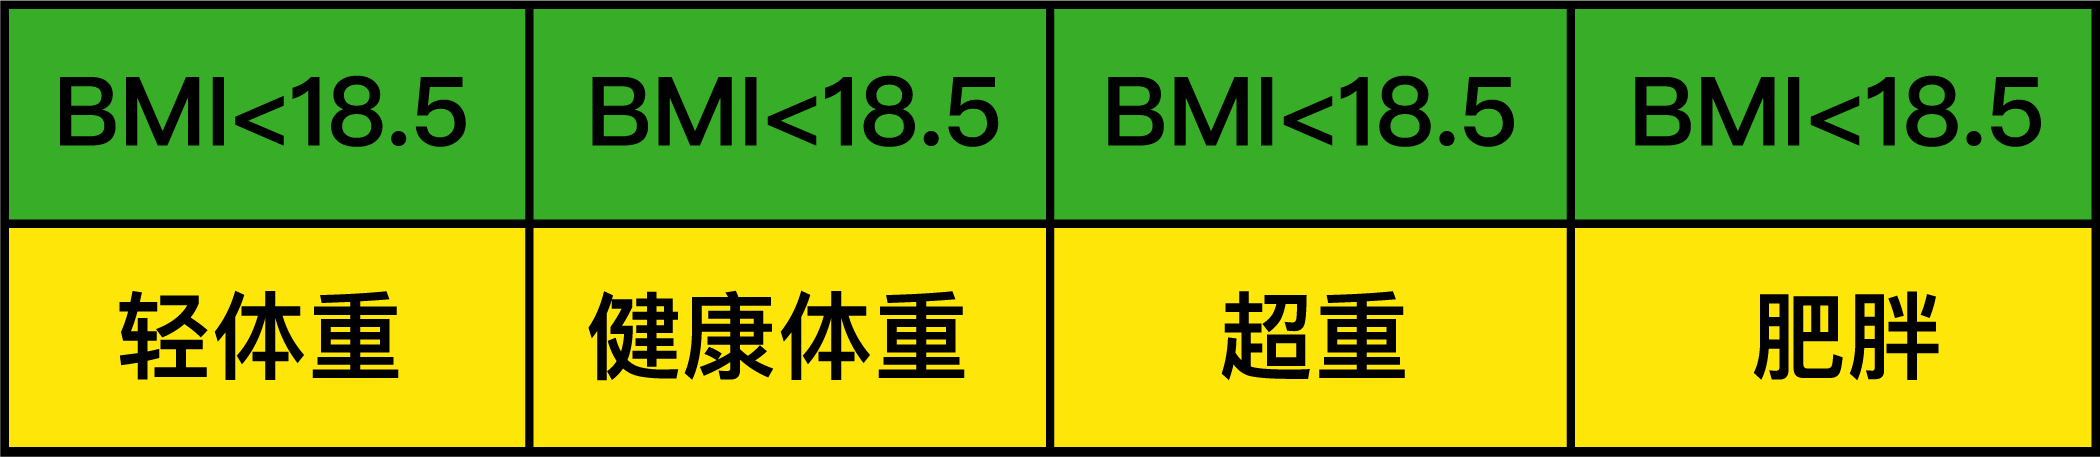 bmi=体重(kg/身高)